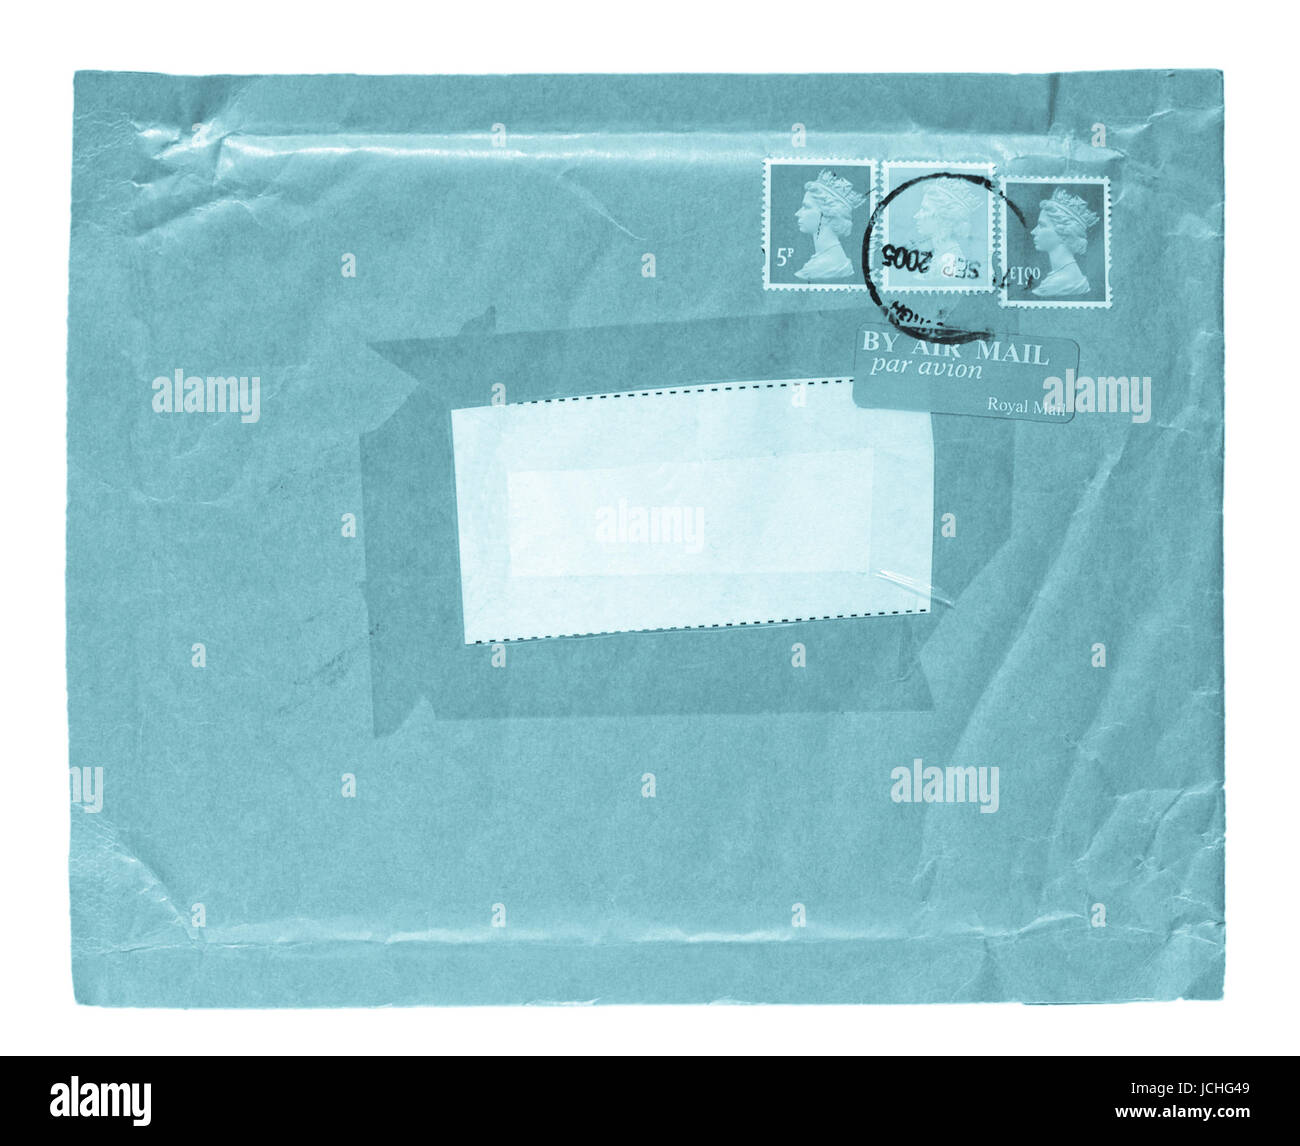 Brief oder Päckchen Umschlag über weiß - cool Cyanotypie isoliert  Stockfotografie - Alamy